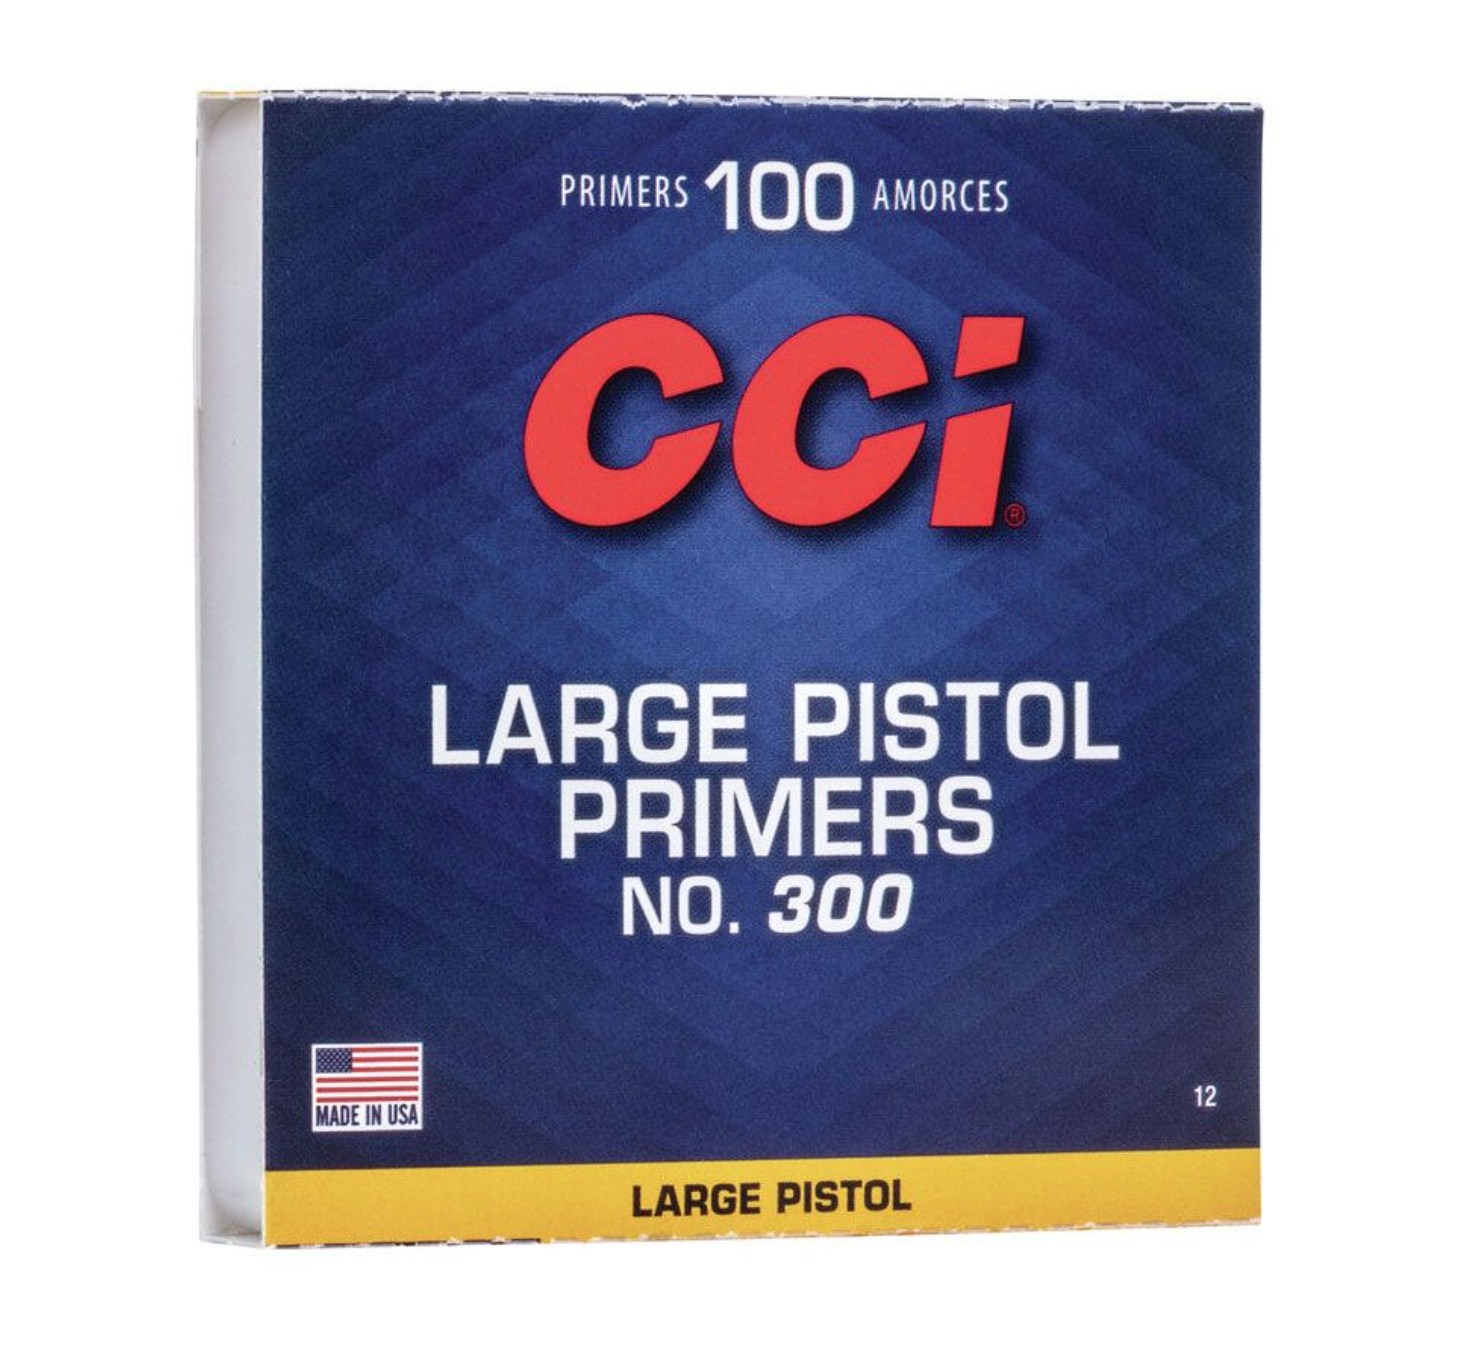 *CCI #400 Large Pistol Primers OEM ONLY* - 100 Quantity